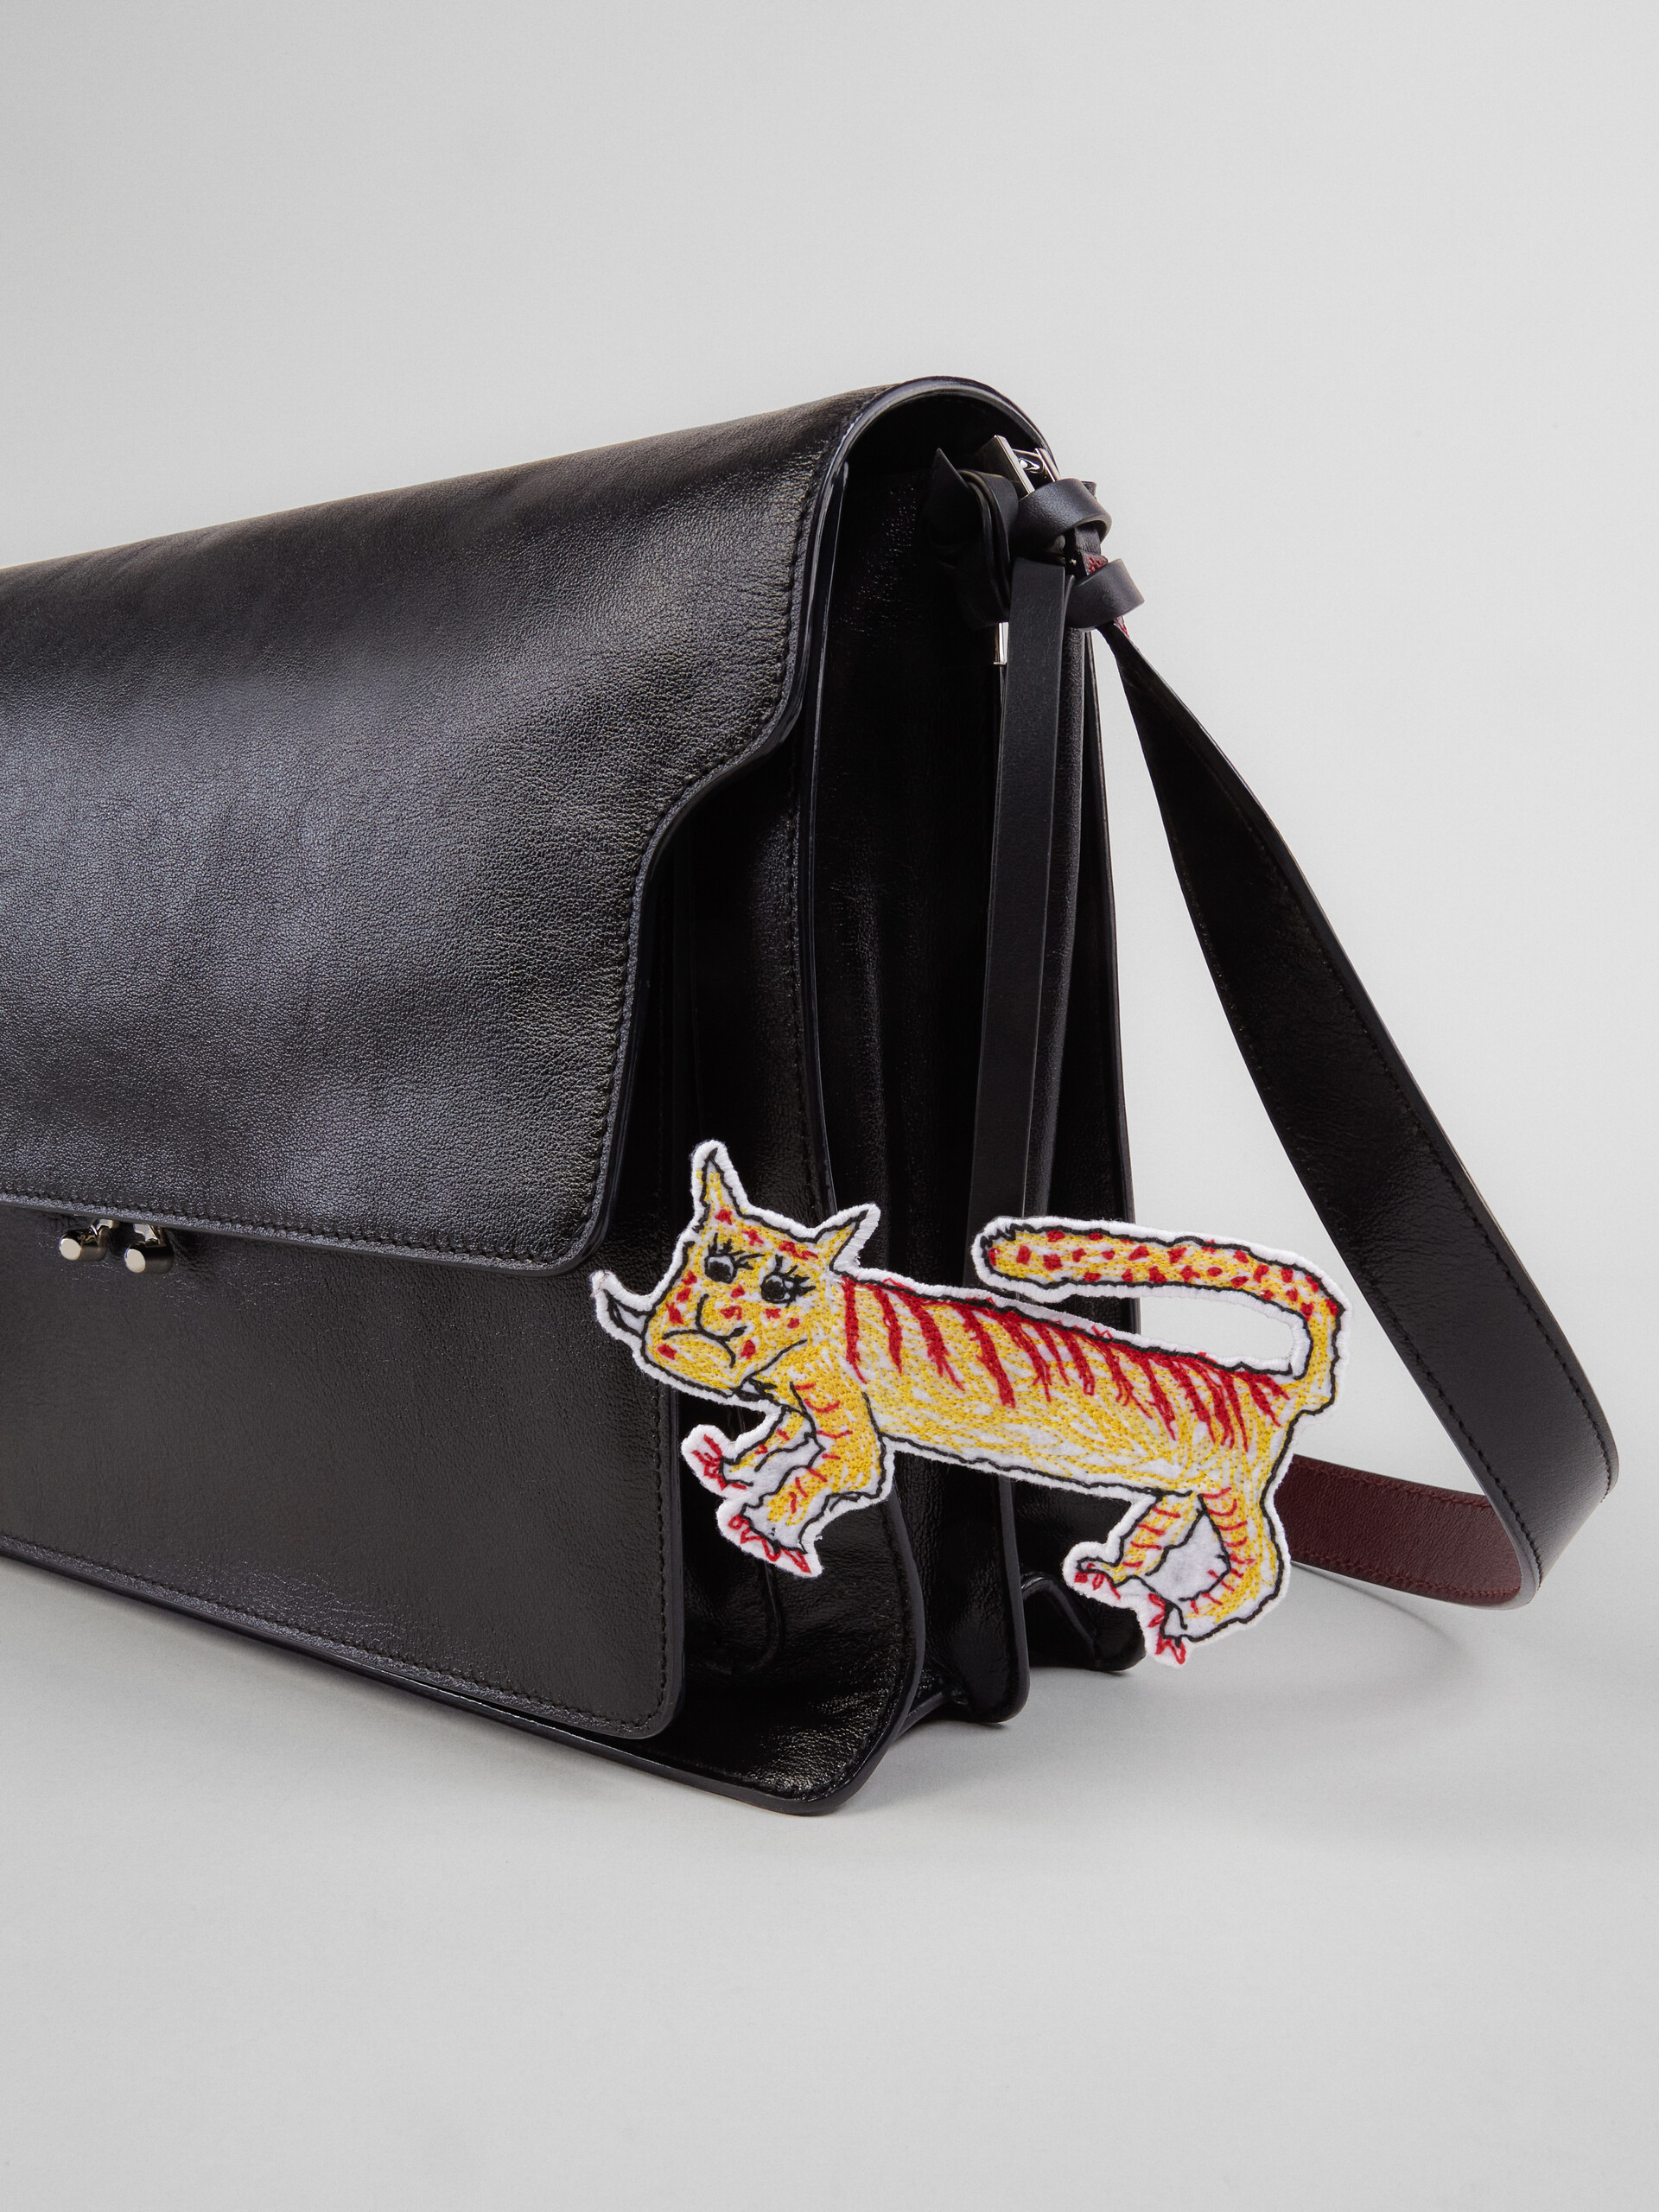 TRUNK SOFT bag in black leather and naif tiger print - Shoulder Bag - Image 4